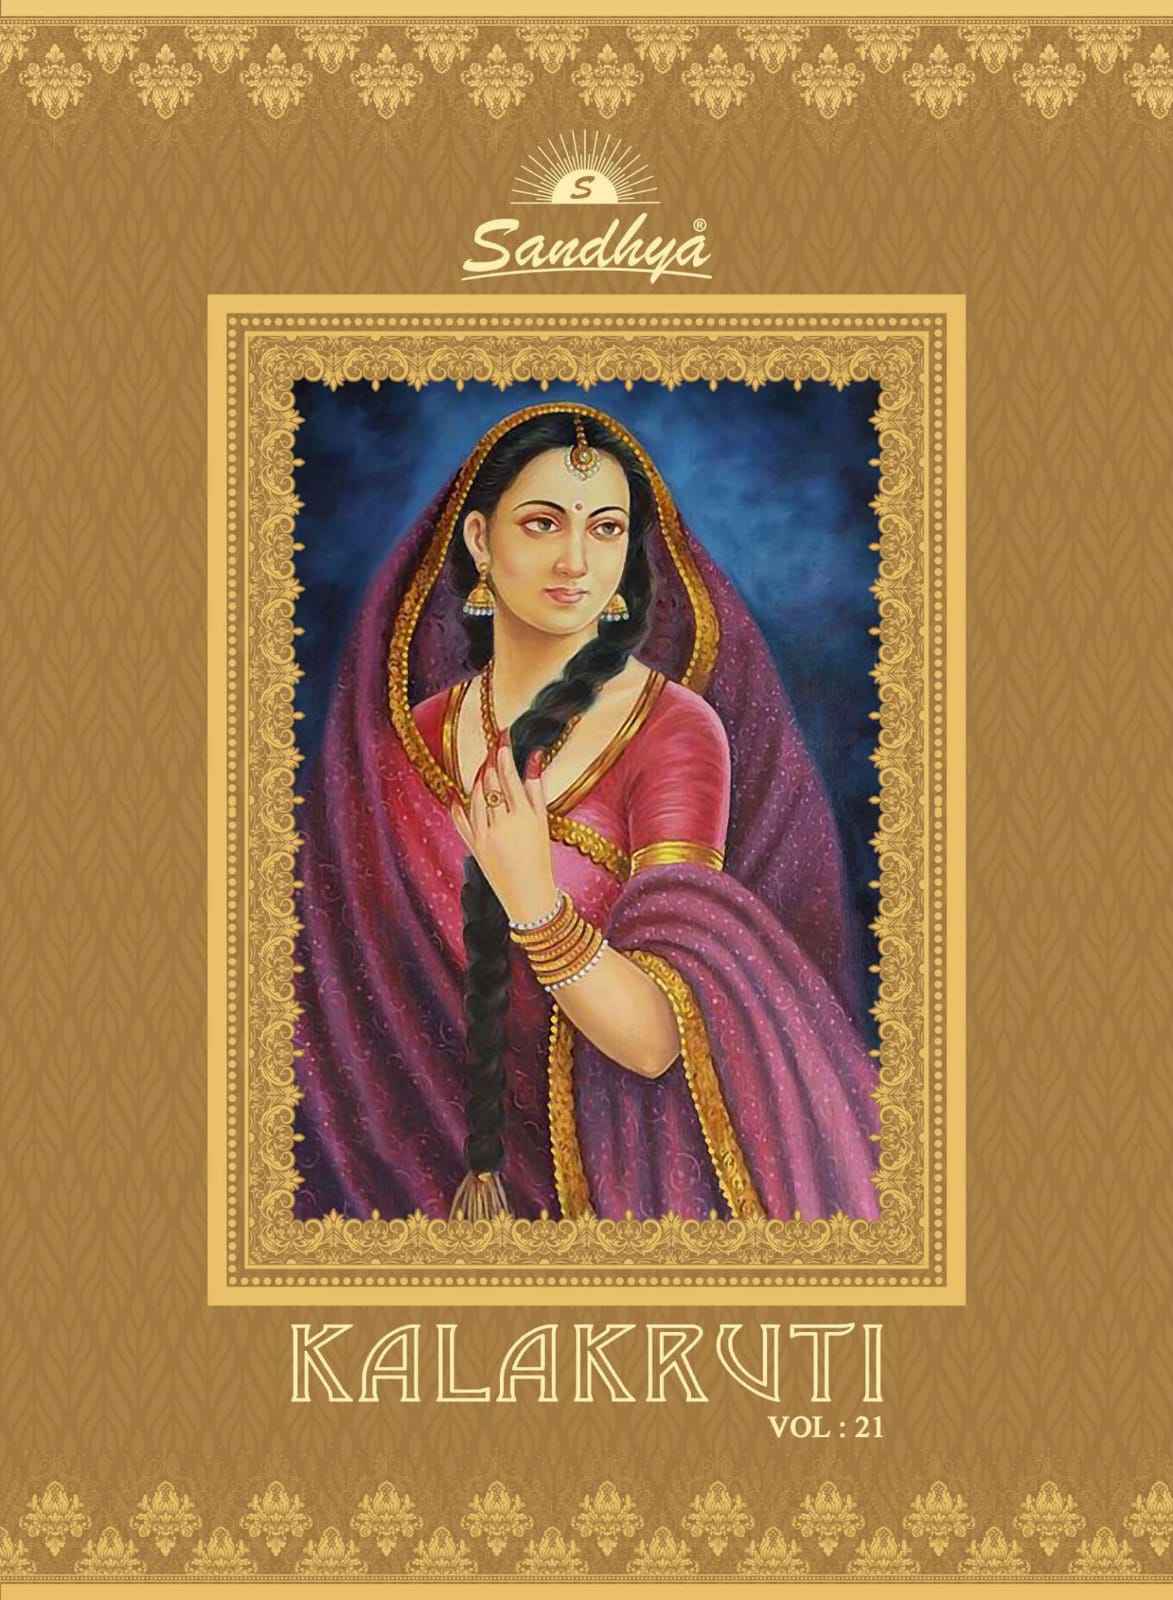 Sandhya Kalakruti Vol 21 Daily Wear Cotton Kurti Designs